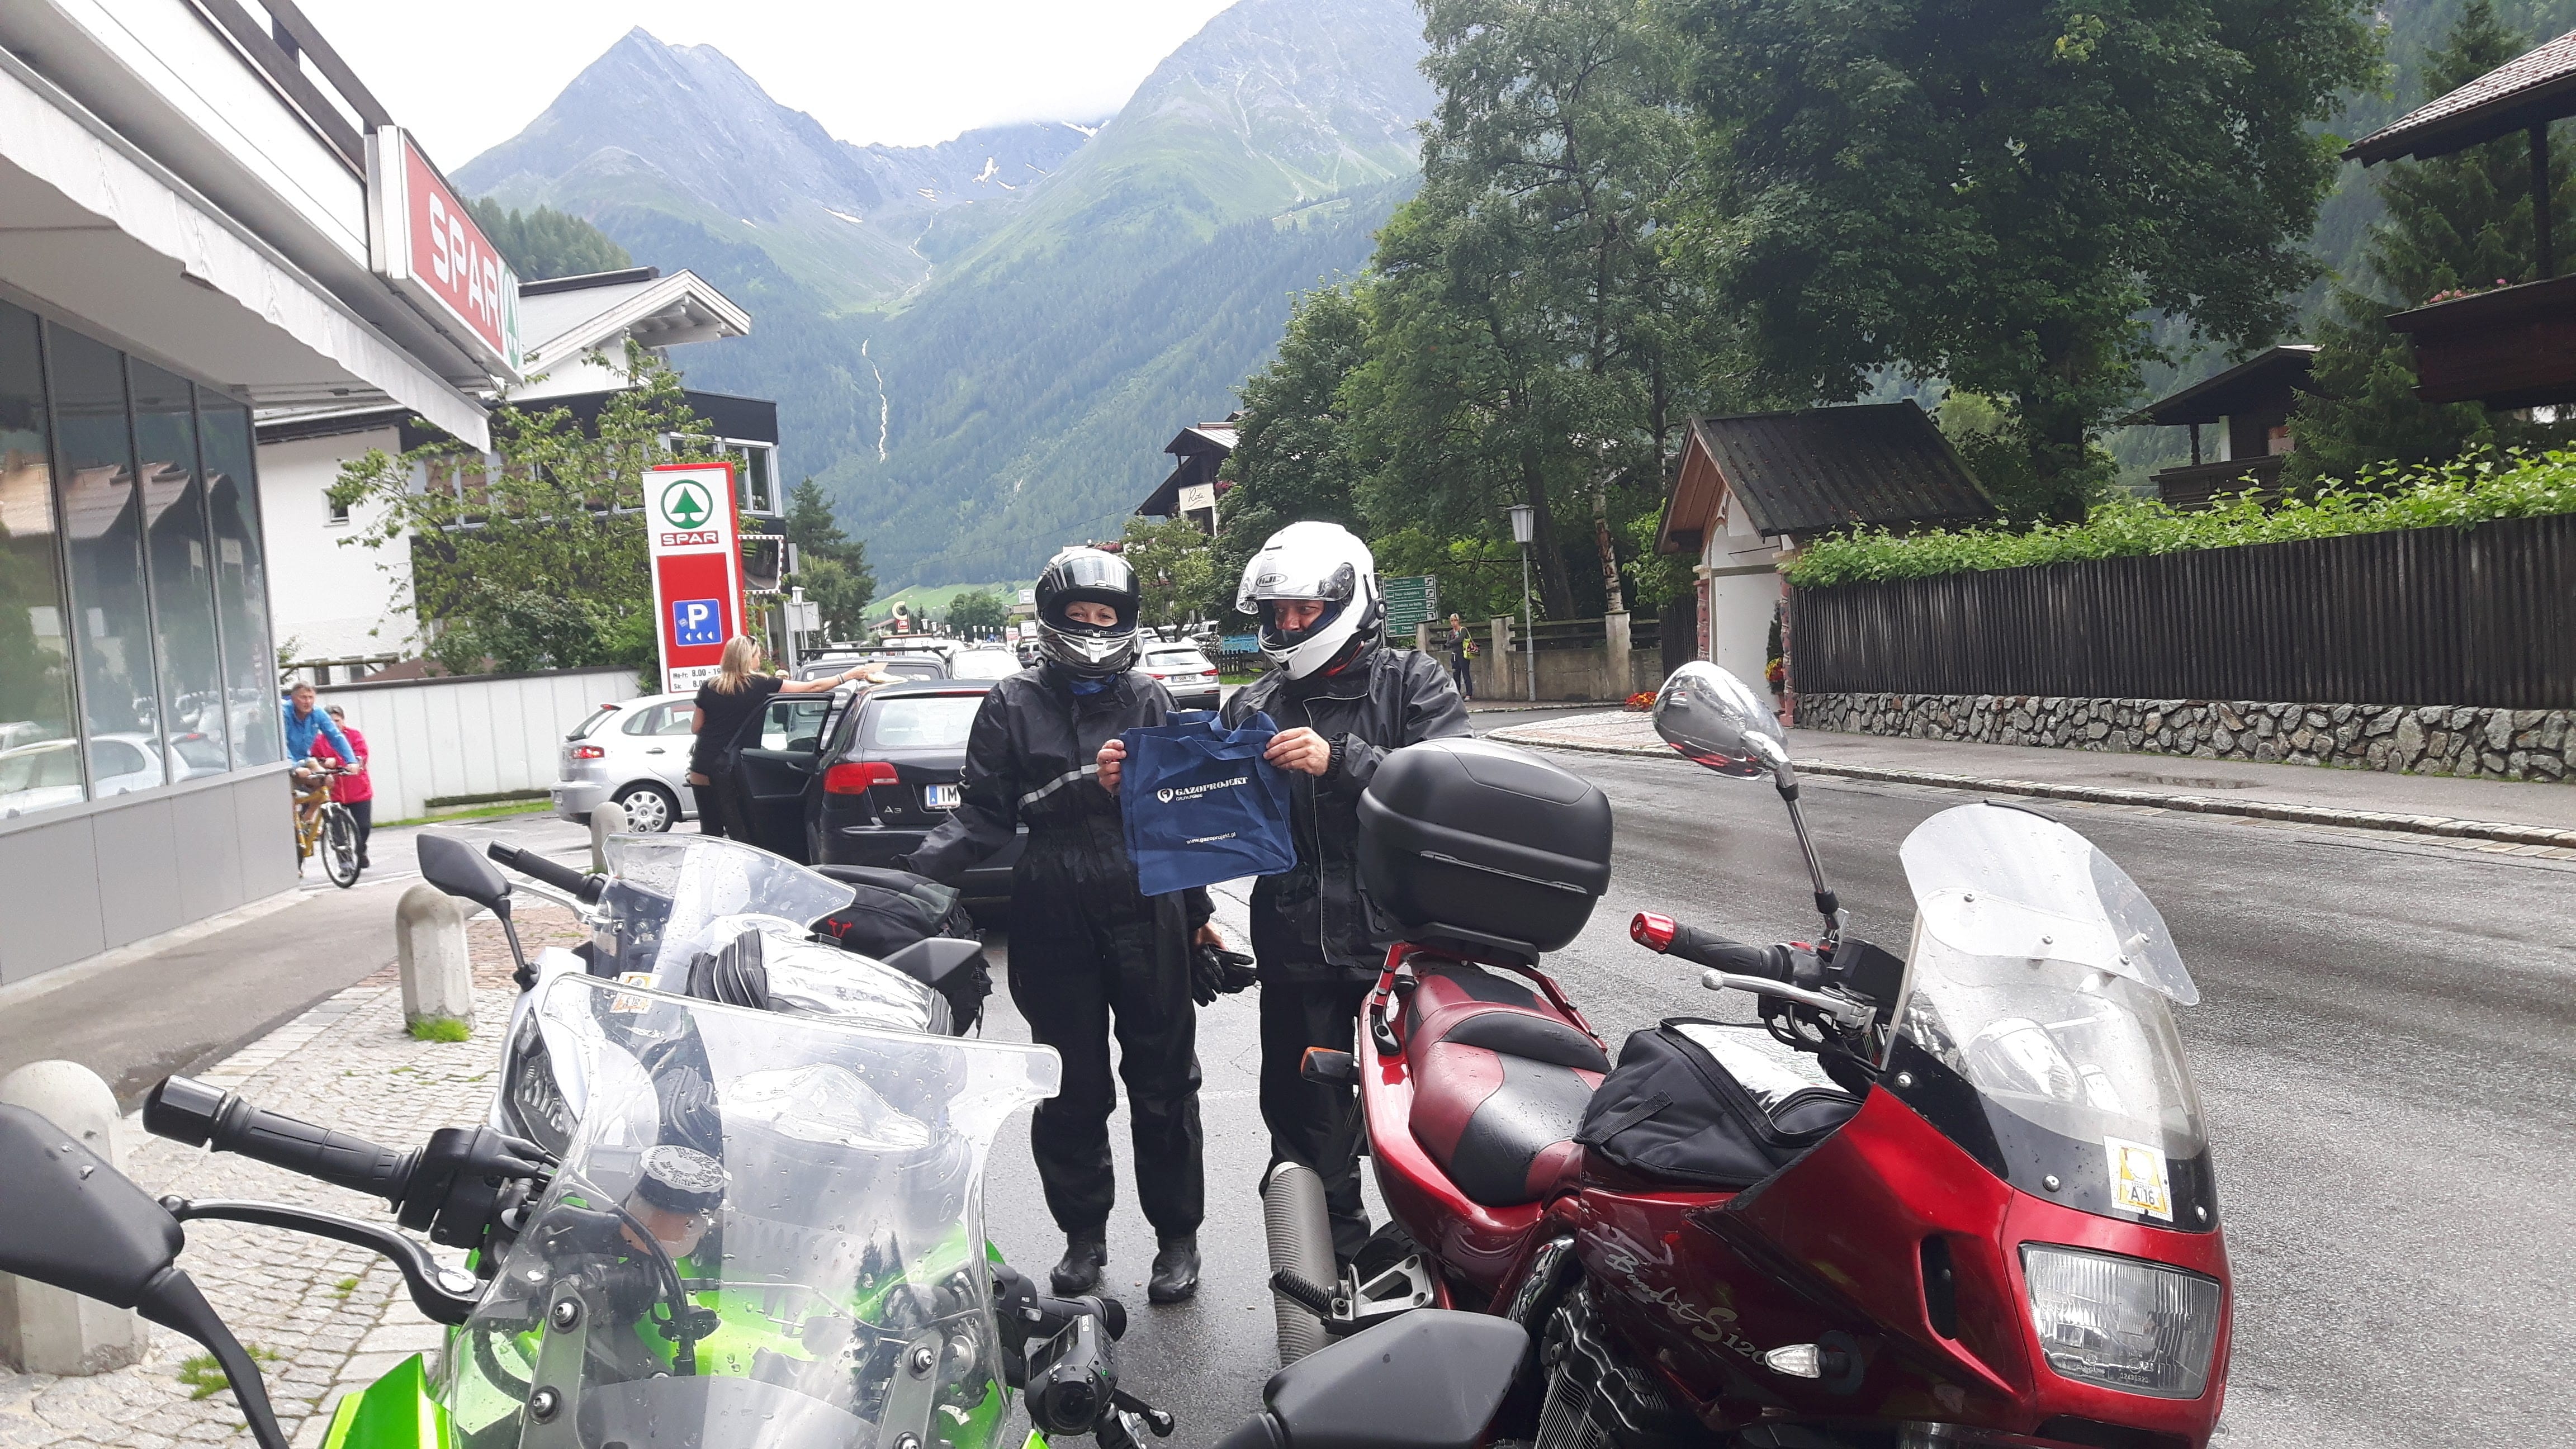 Alpy wycieczka motorowa 